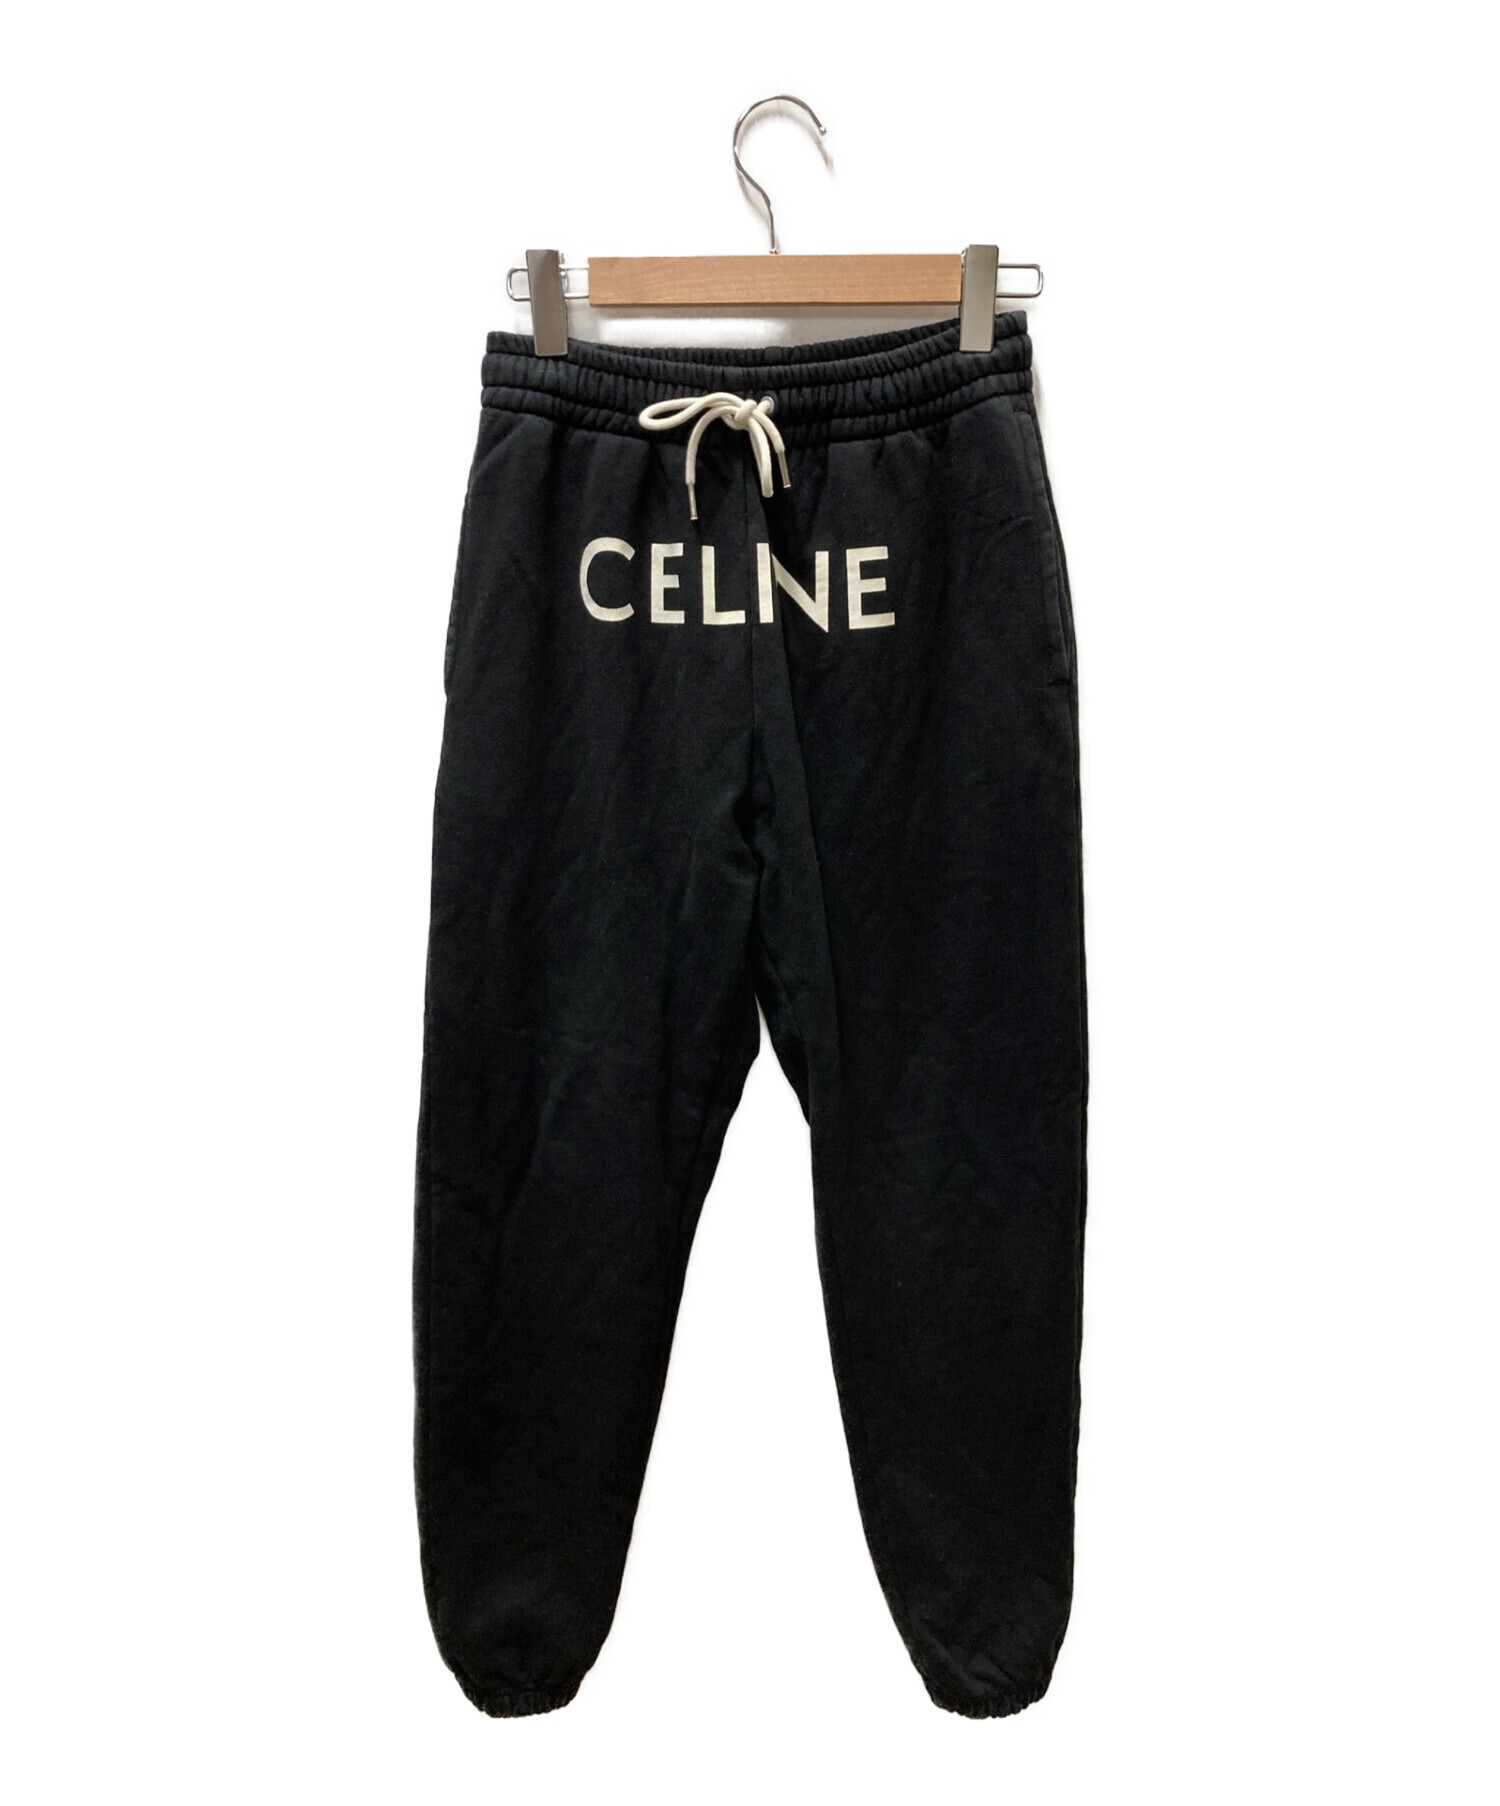 CELINE (セリーヌ) TRACK PANTS IN COTTON FLEECE ブラック サイズ:Ｓ